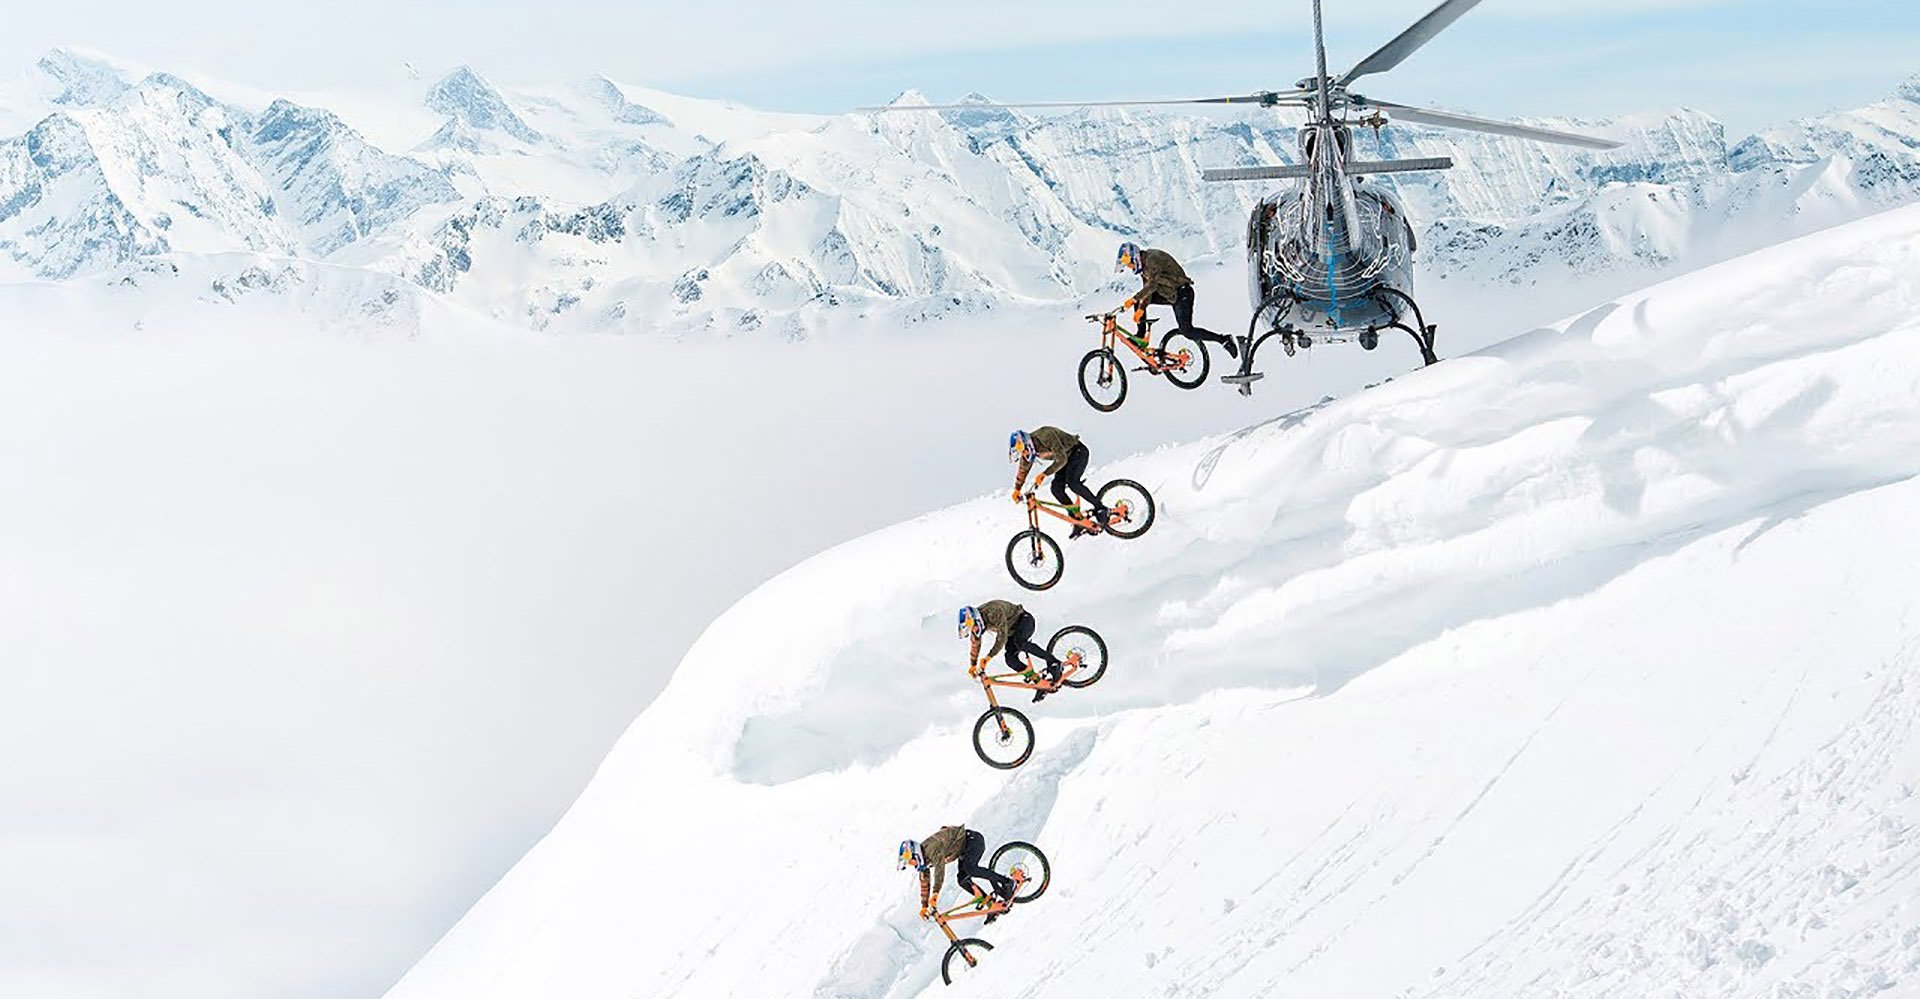 fabian-winter-mountain-bike-edit.jpg